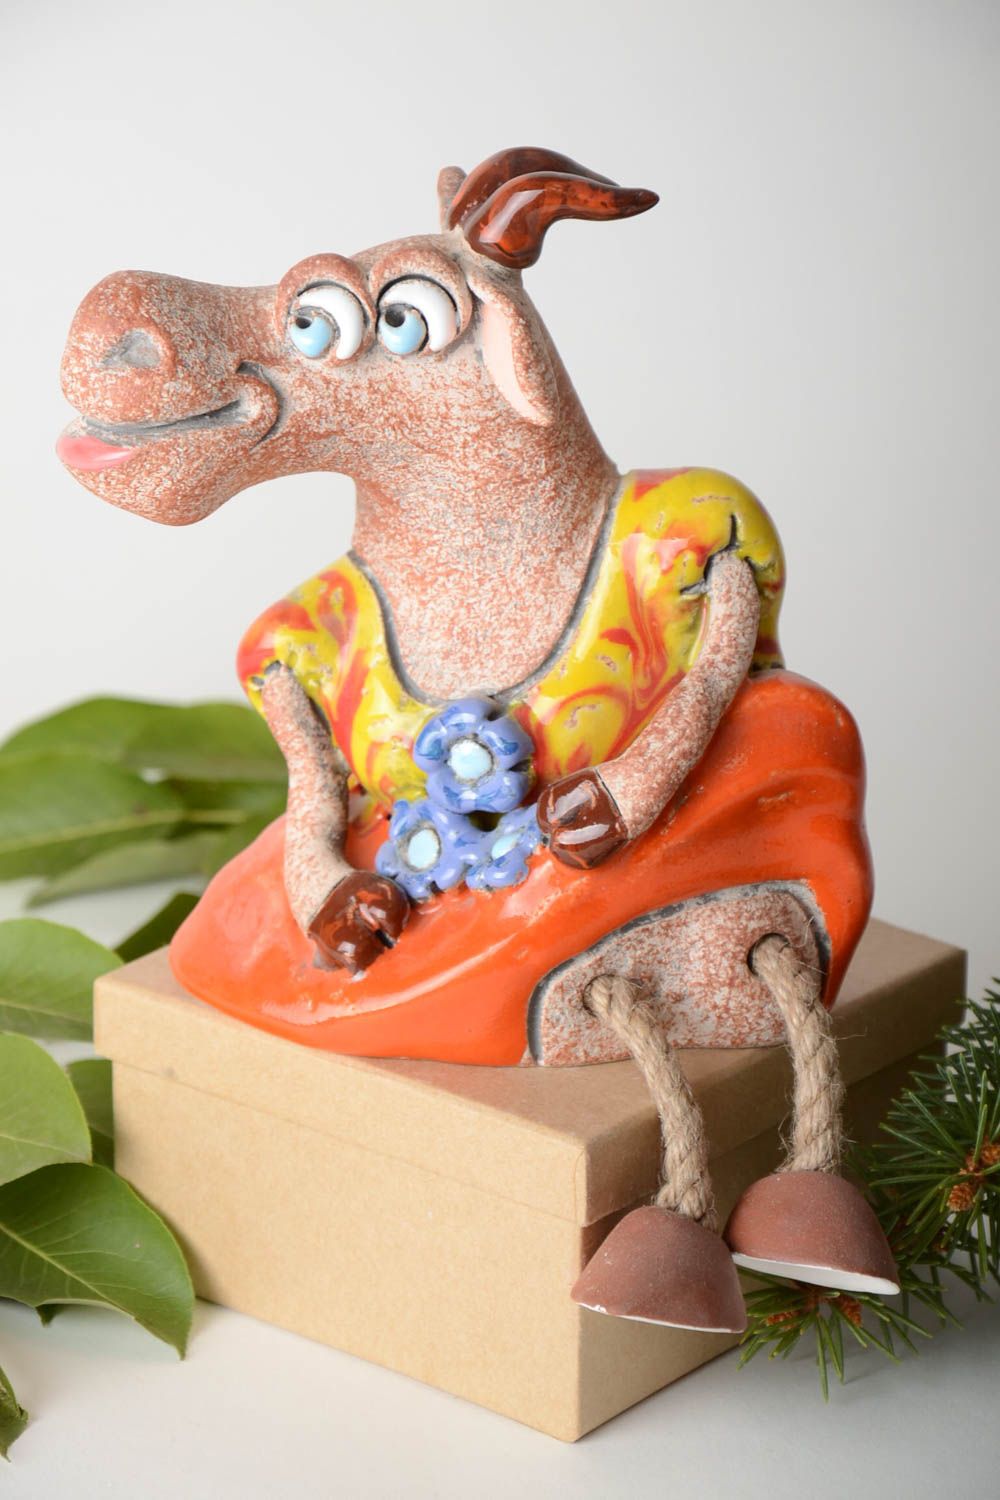 Tirelire fait main Figurine animal en argile peinte Cadeau insolite Chèvre photo 1